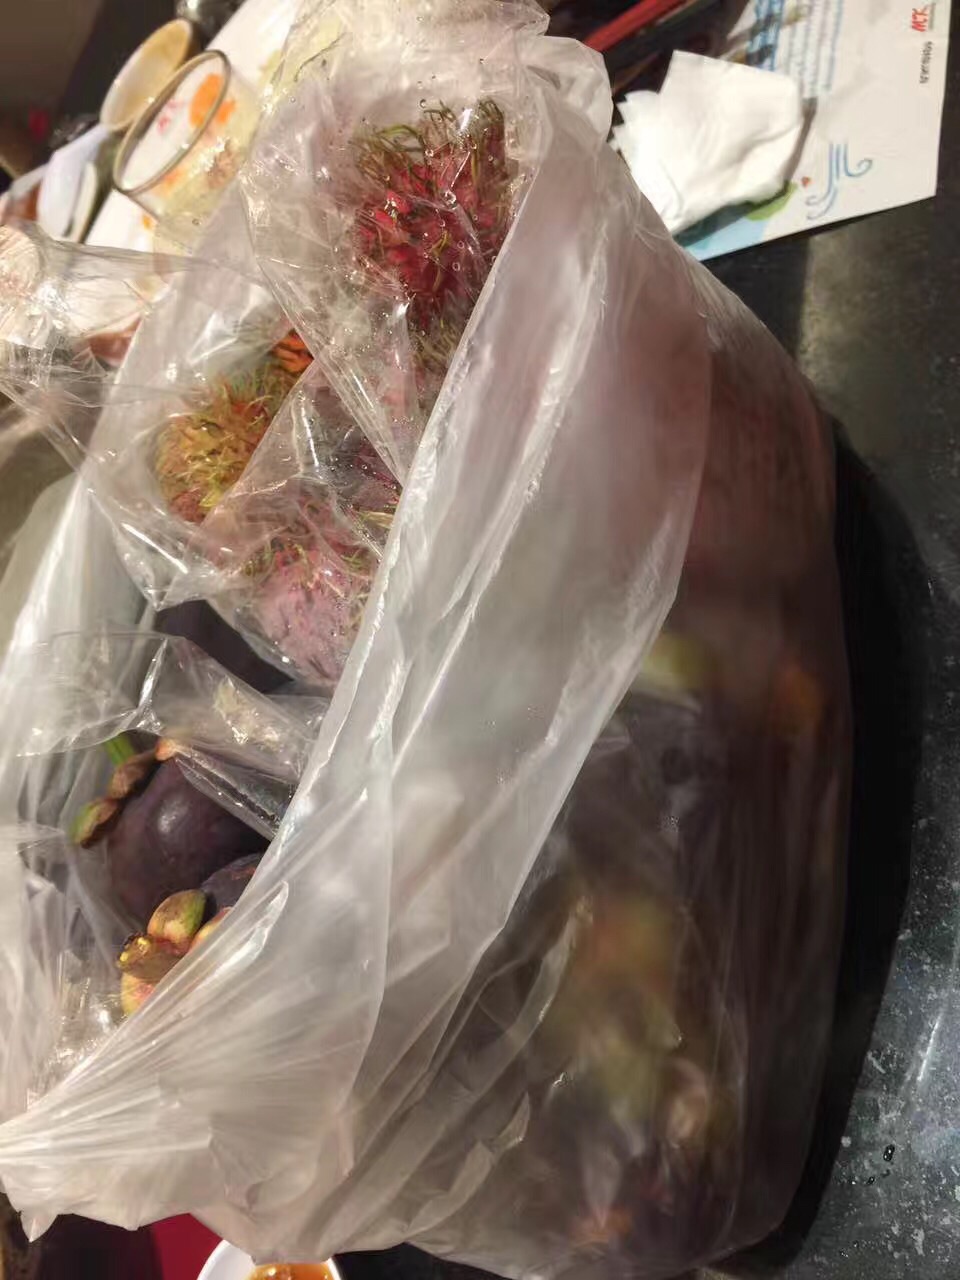 一大袋水果,每袋都是100泰铢,很便宜.